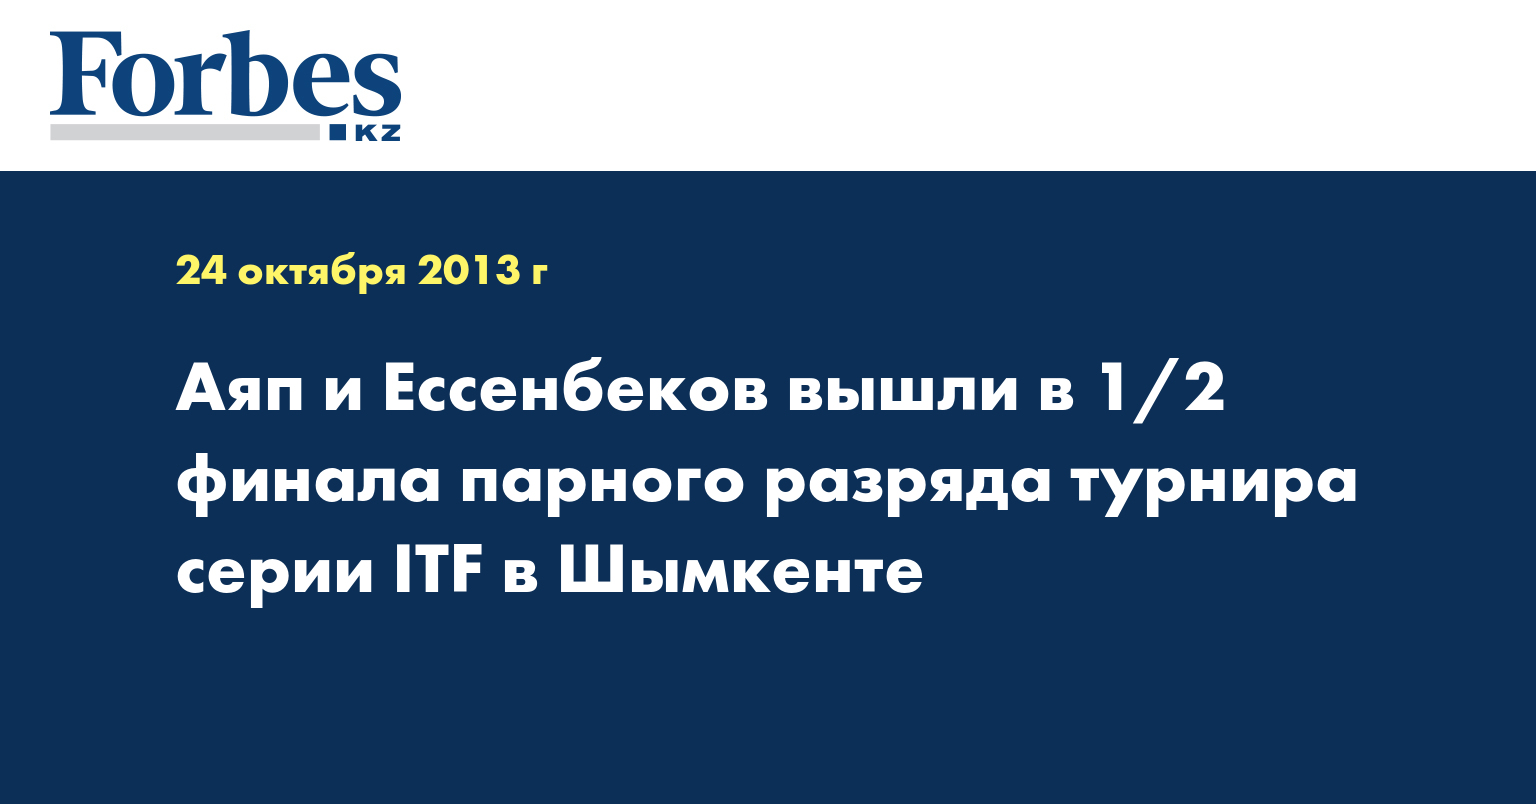 Аяп и Ессенбеков вышли в 1/2 финала парного разряда турнира серии ITF в Шымкенте